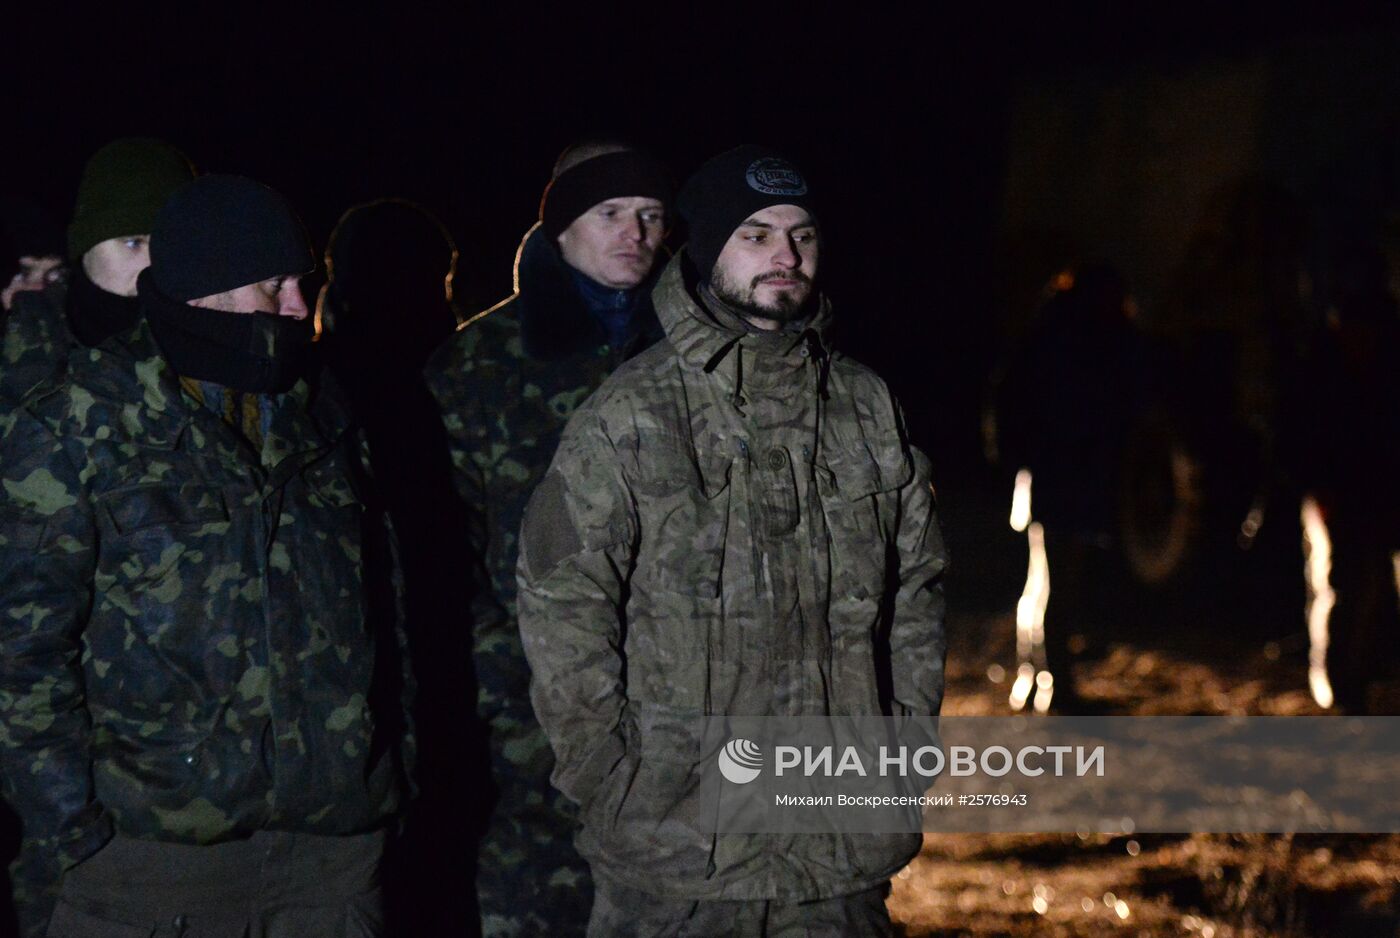 Обмен пленными между ополченцами ДНР, ЛНР и украинскими силовикам